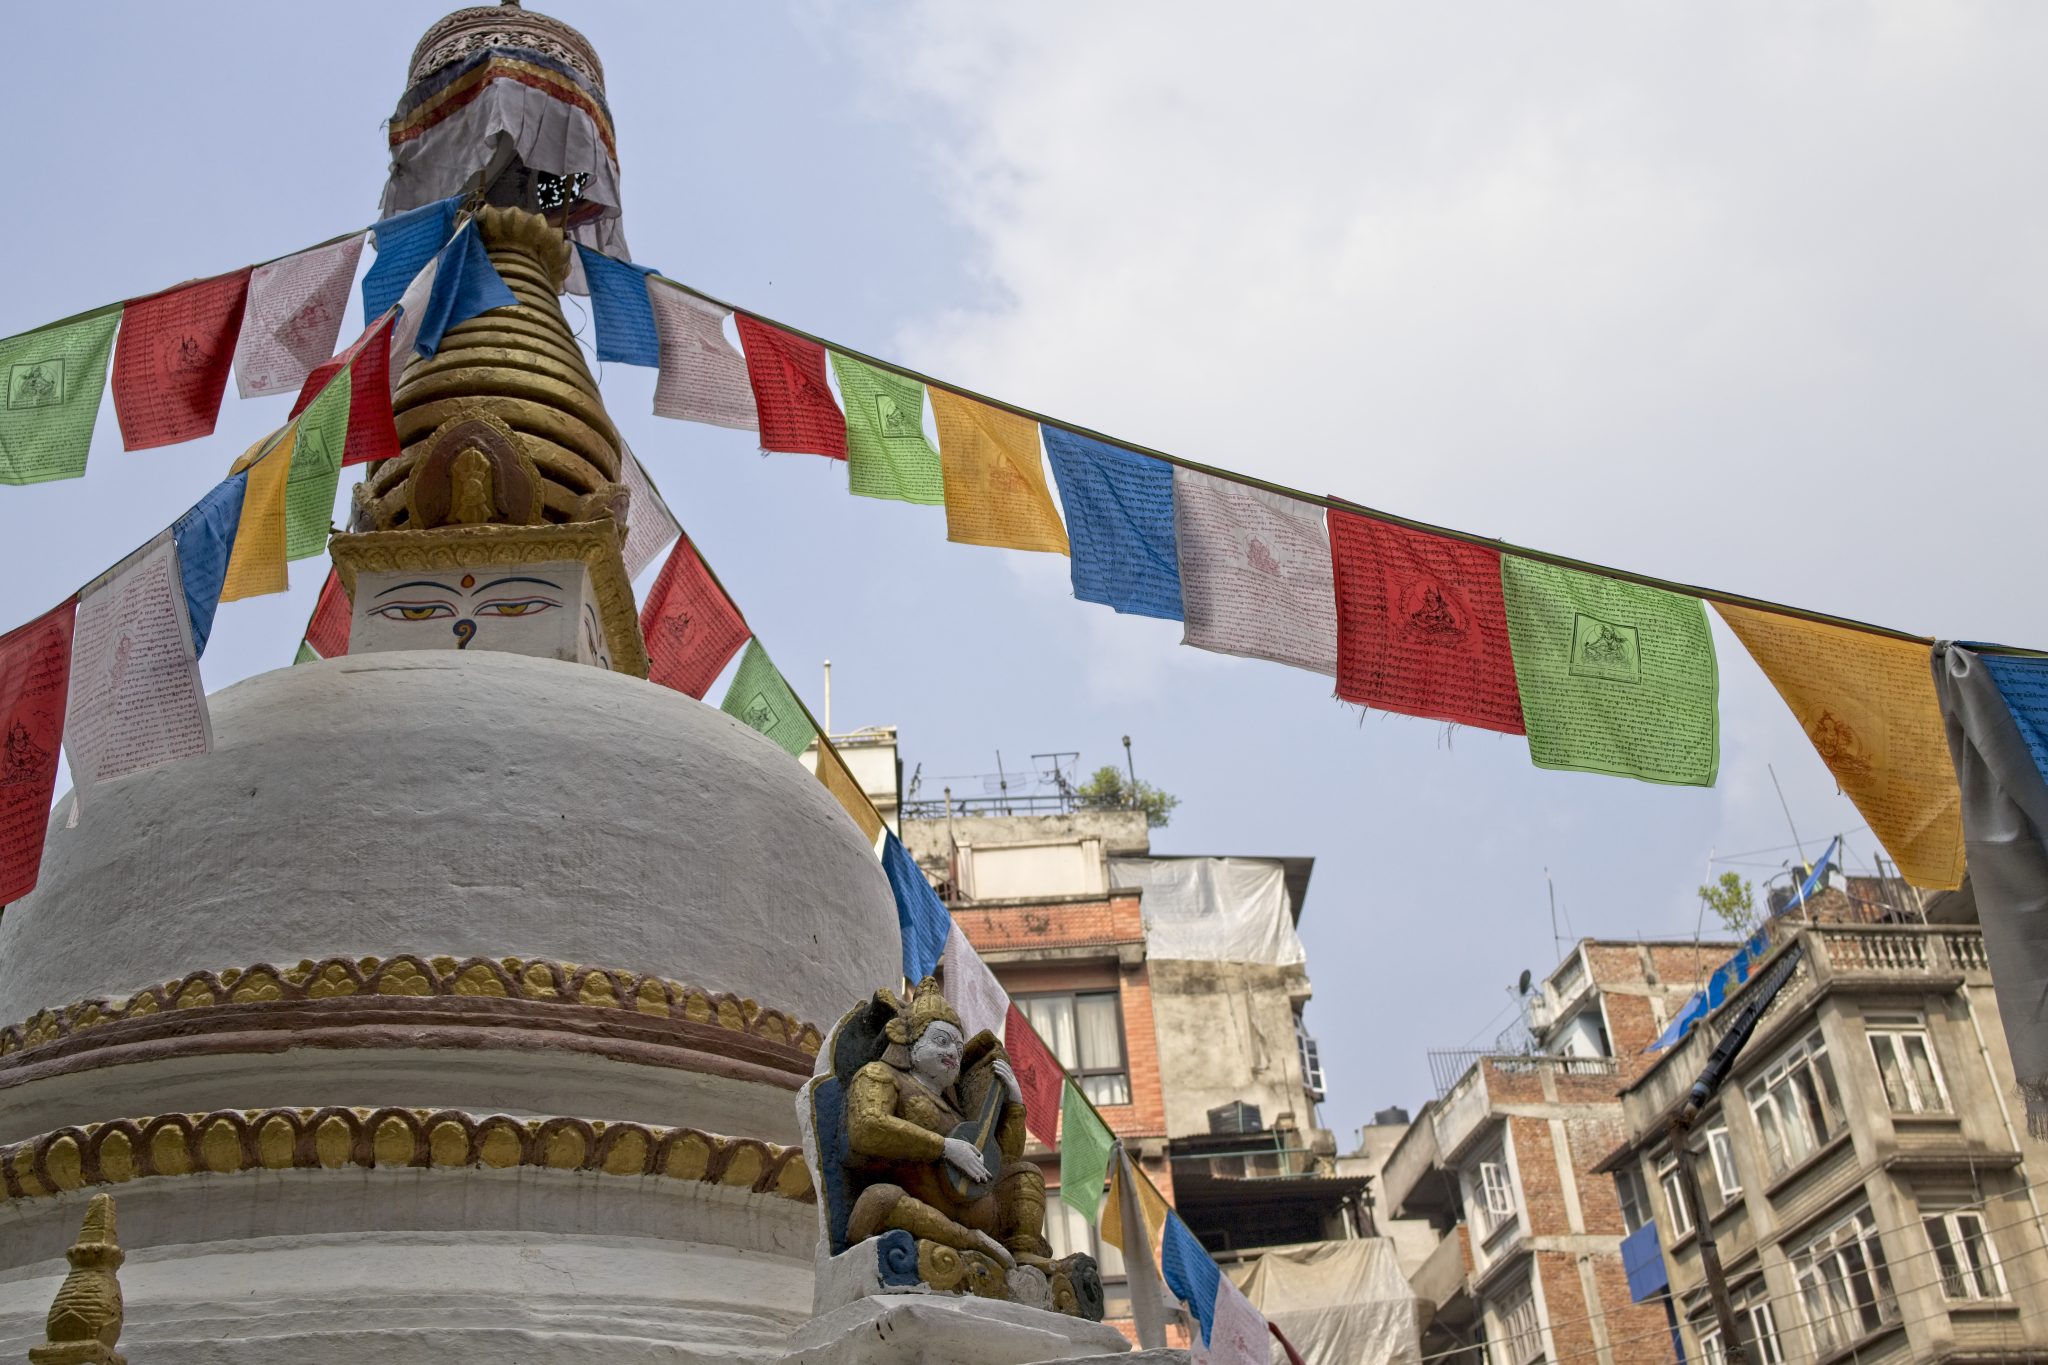 Kathmandu - Boudhanath - Boudha Stupa